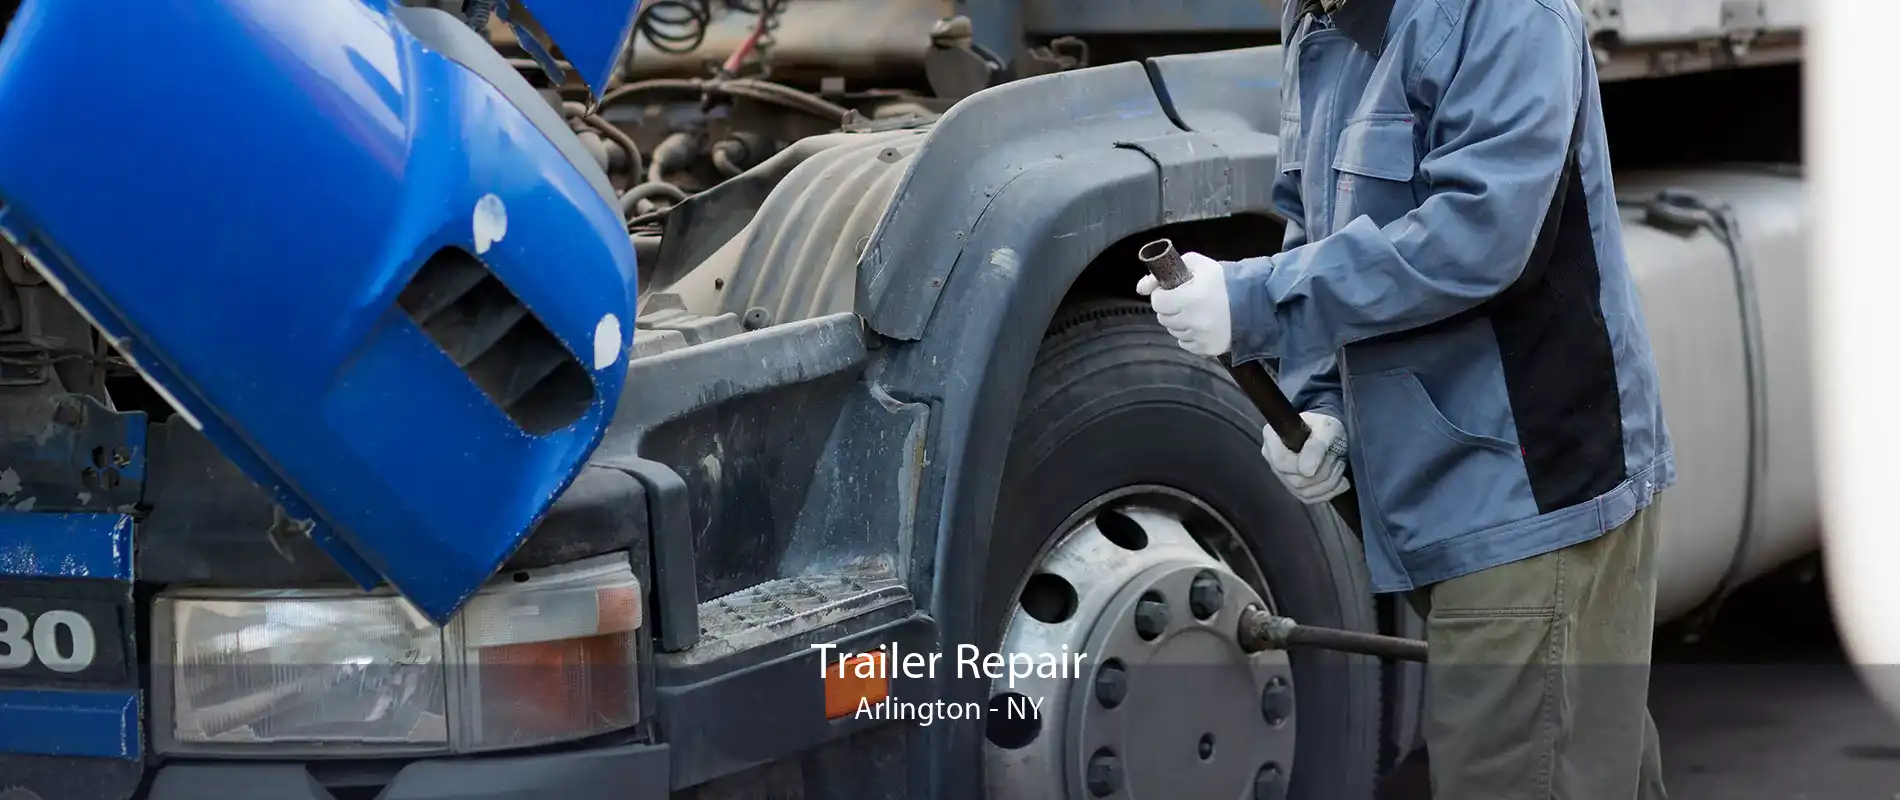 Trailer Repair Arlington - NY